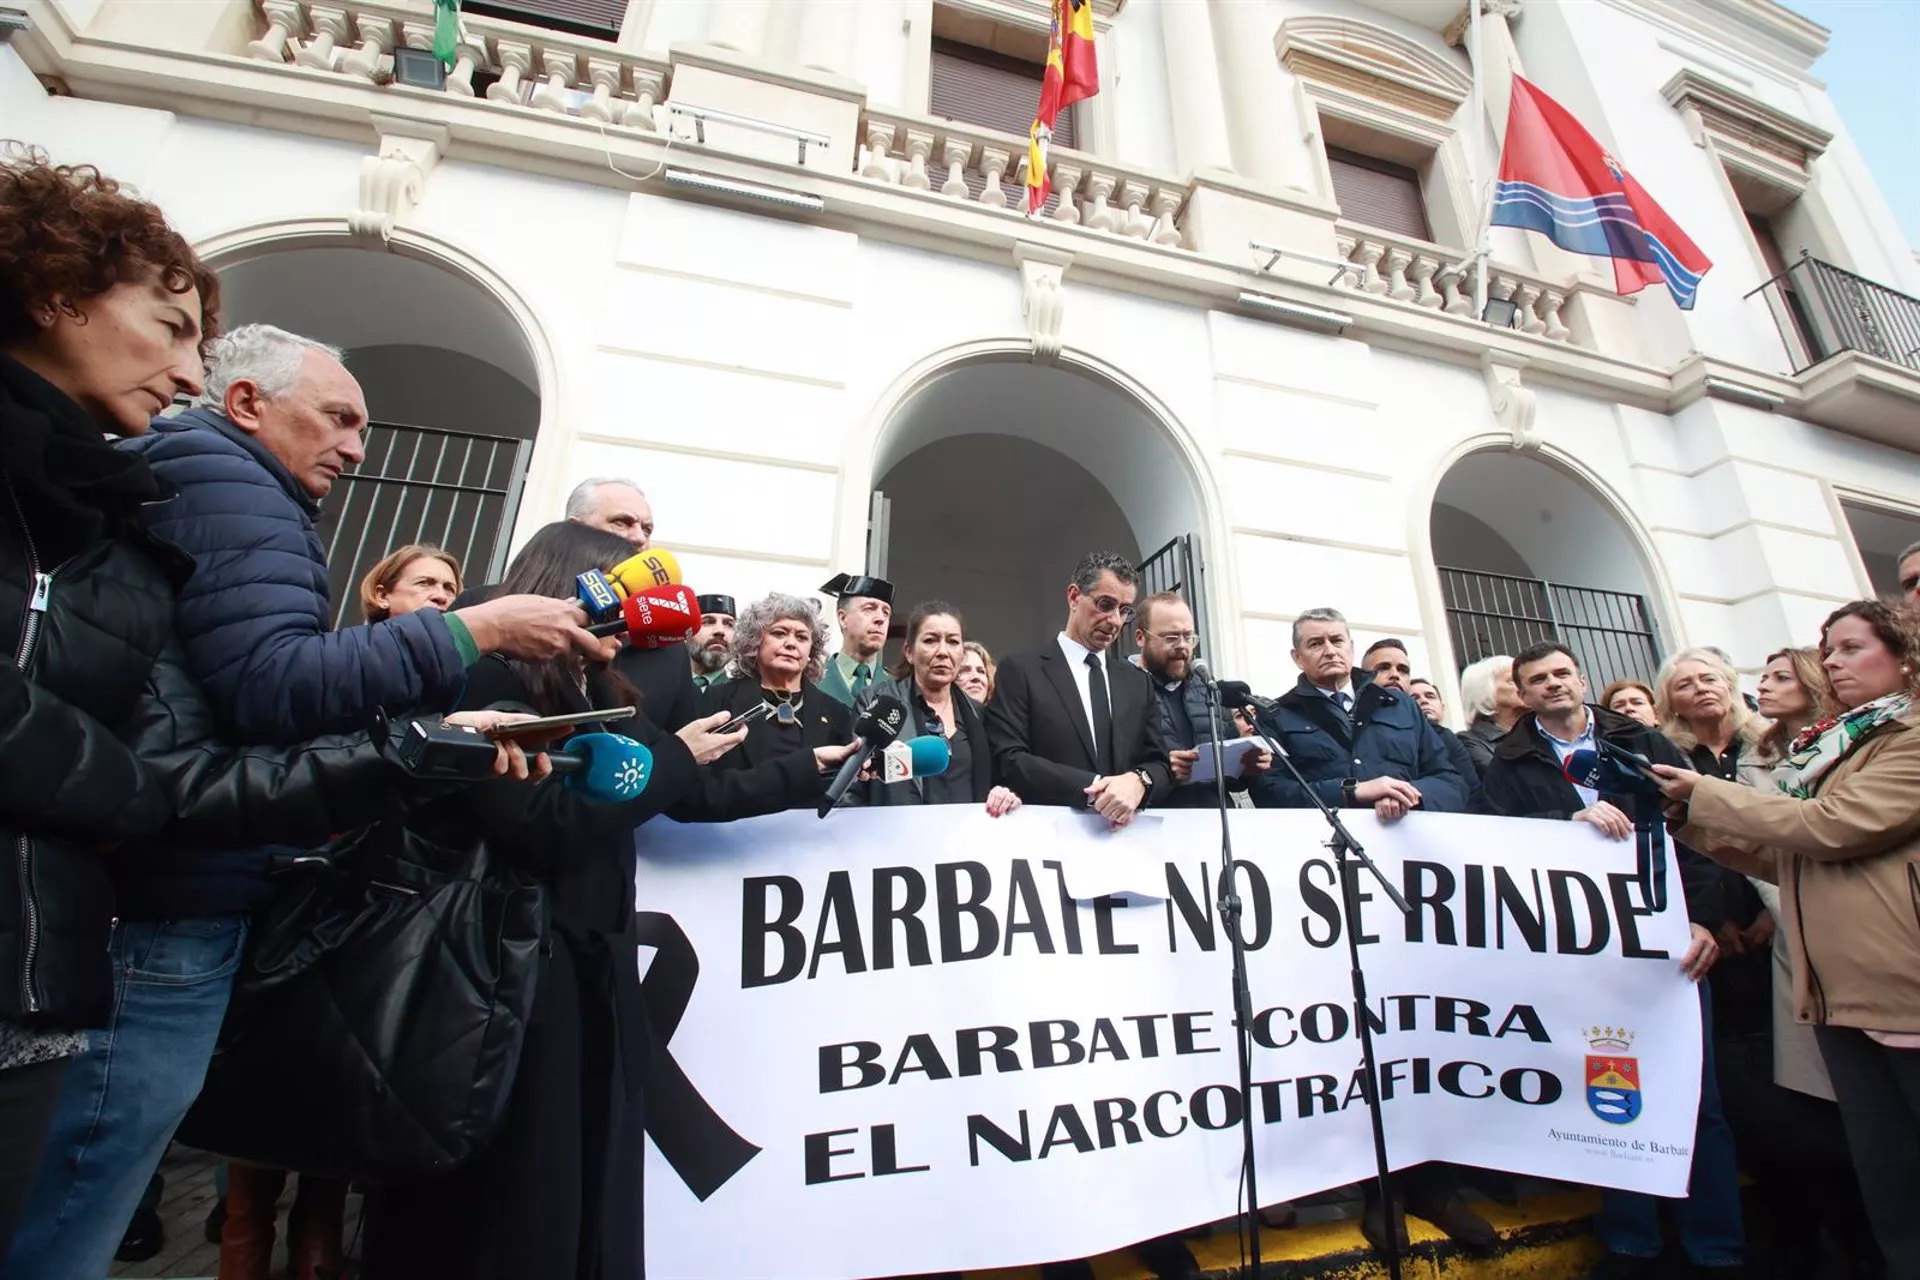 El alcalde de Barbate, Miguel Molina, junto al consejero de Presidencia, Antonio Sanz, en la concentración del pasado 10 de febrero en Barbate.